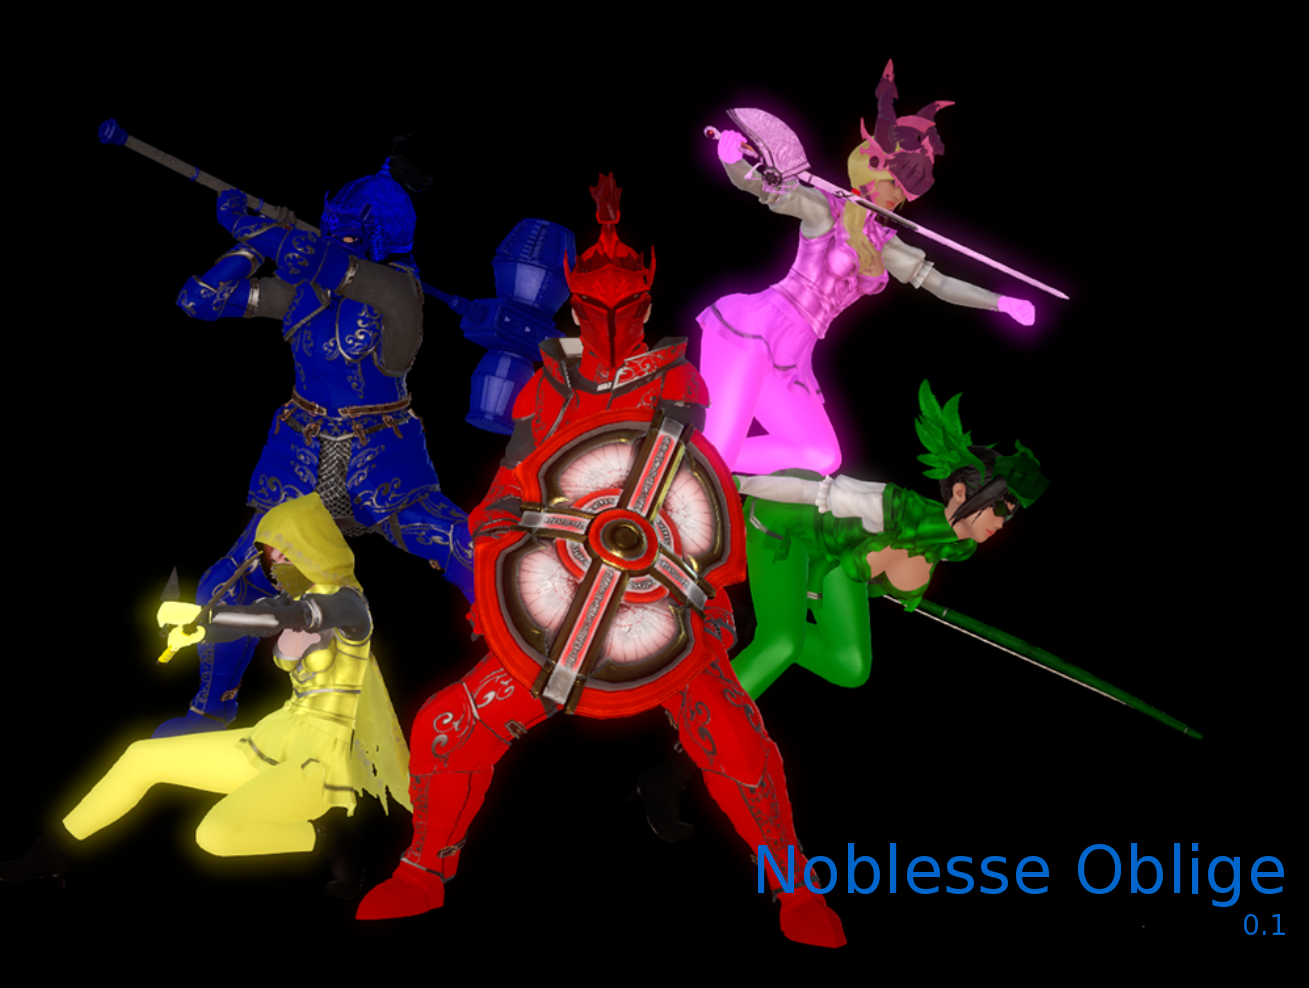 Noblesse Oblige Version 0.1 by Tjord